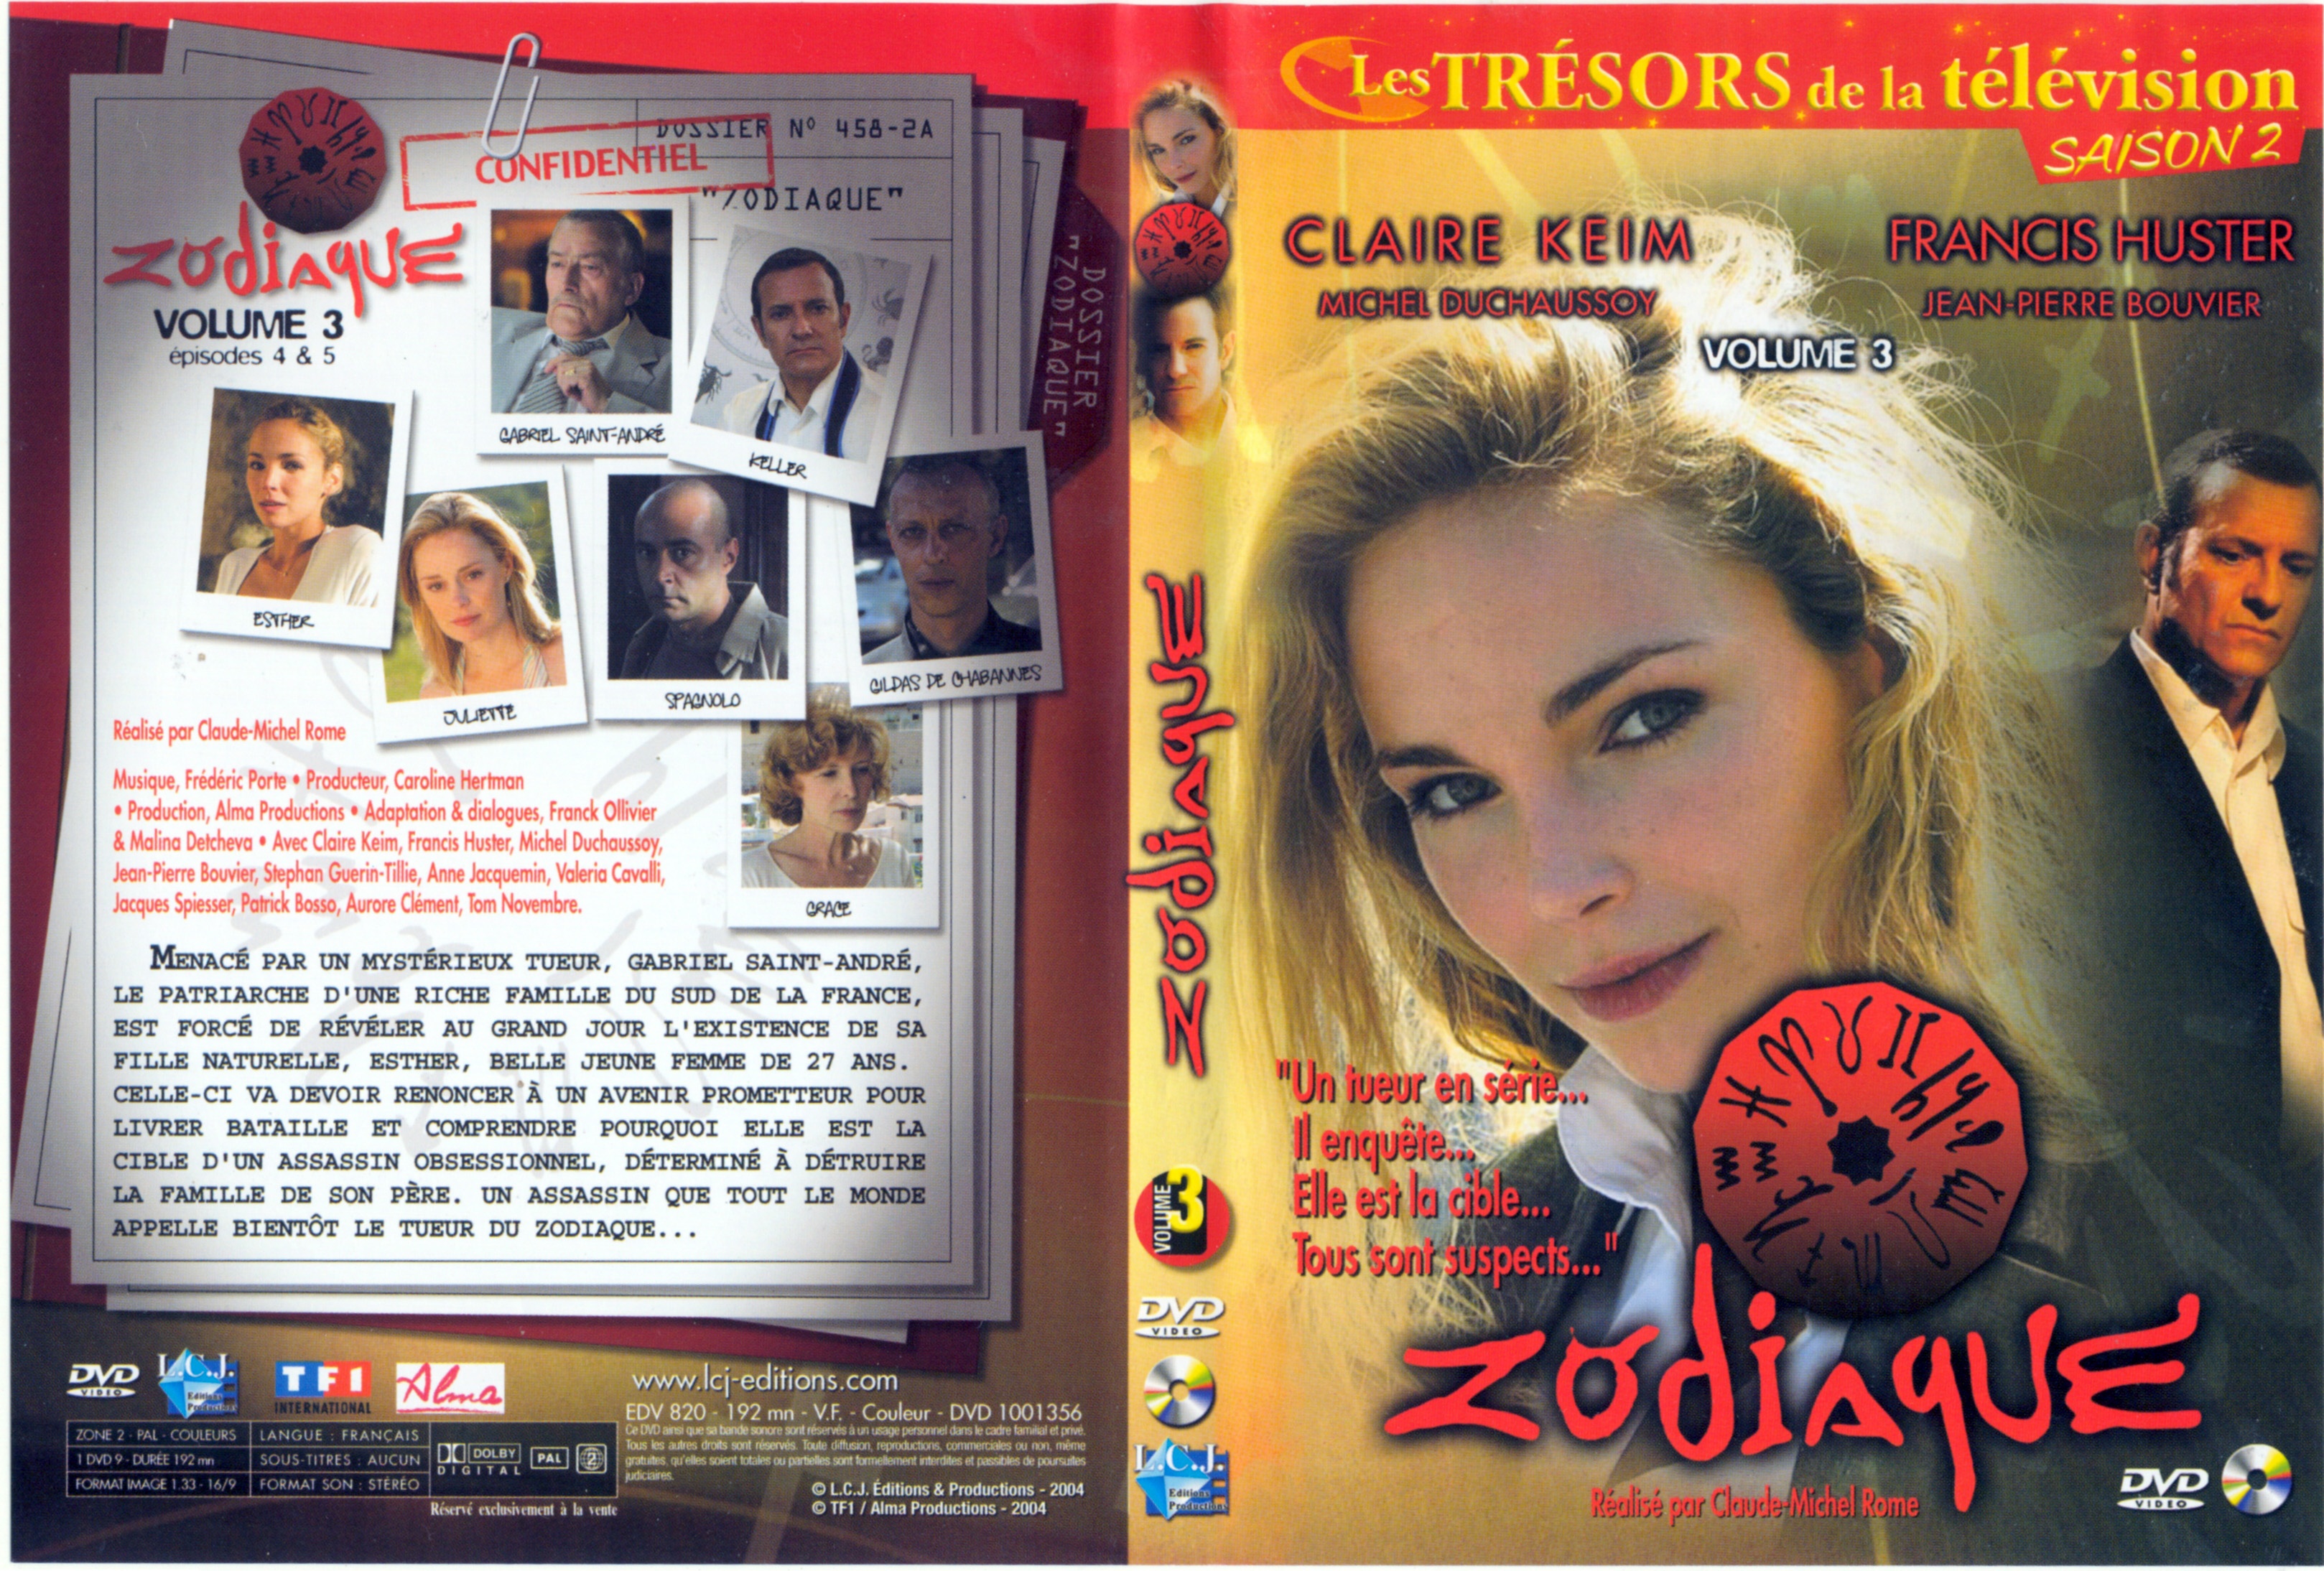 Jaquette DVD Zodiaque vol 3